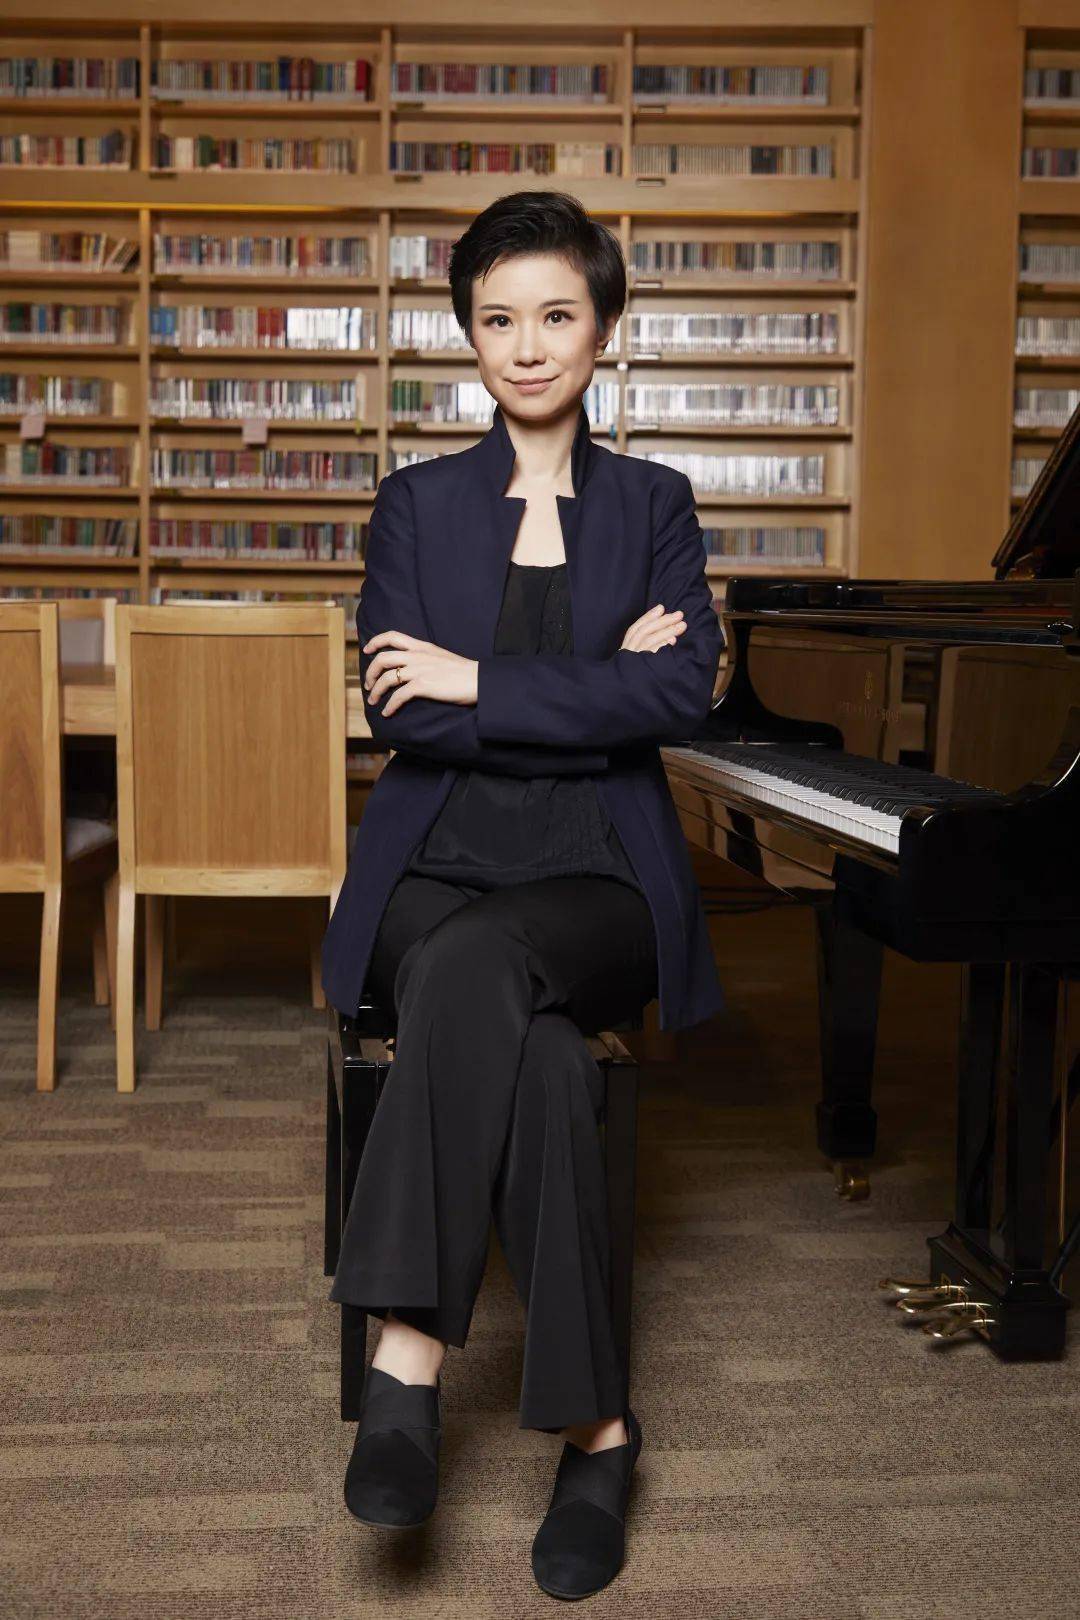 指挥:陈琳面向新时代的崭新未来,中国交响乐团将不忘初心,牢记使命